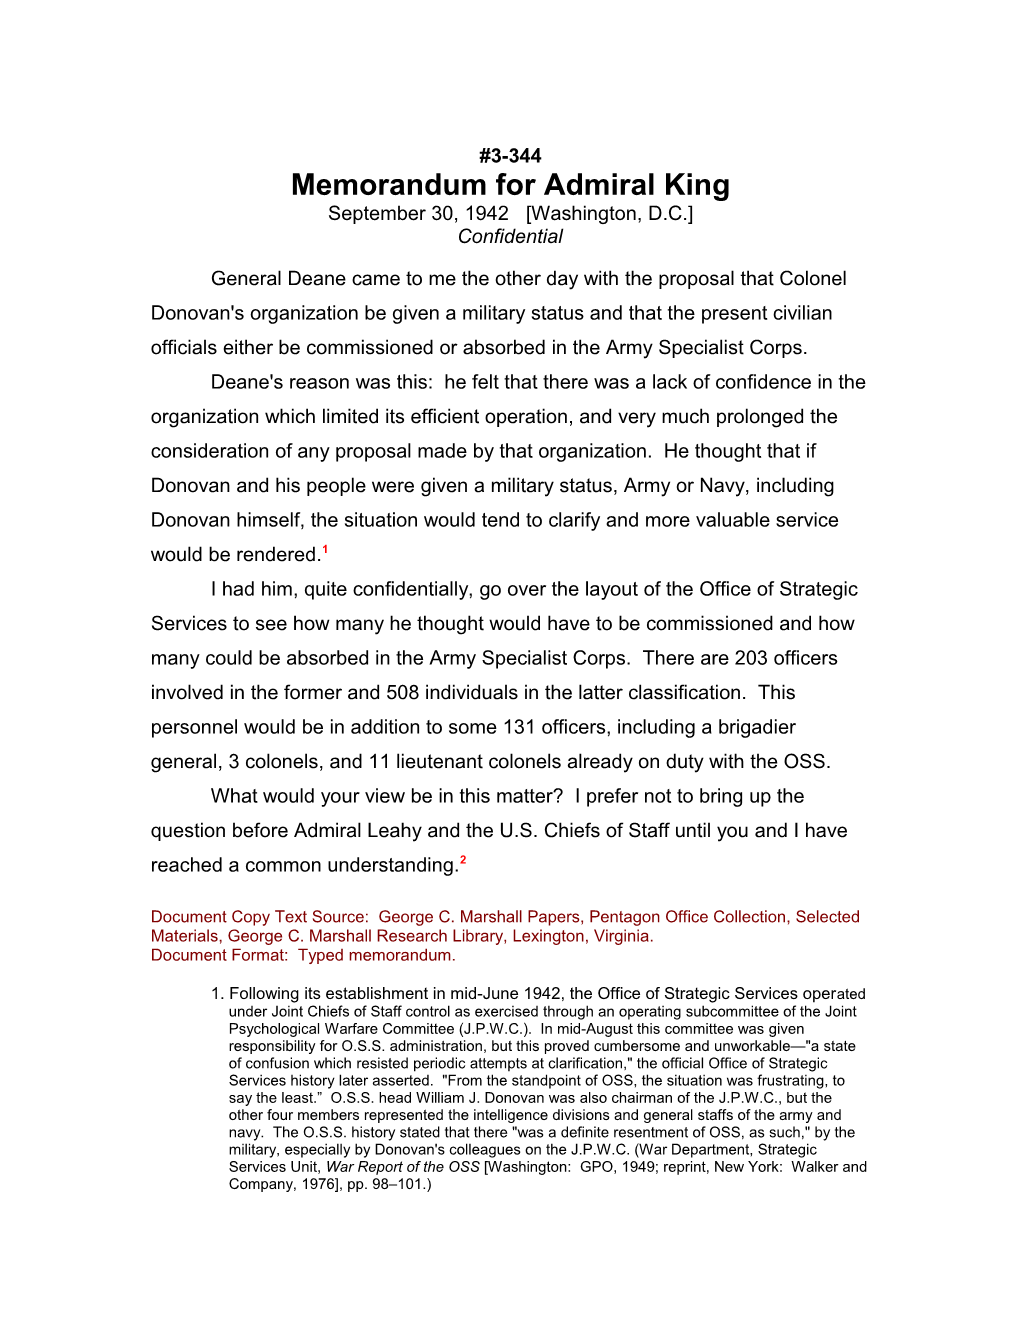 Memorandum for Admiral King s1